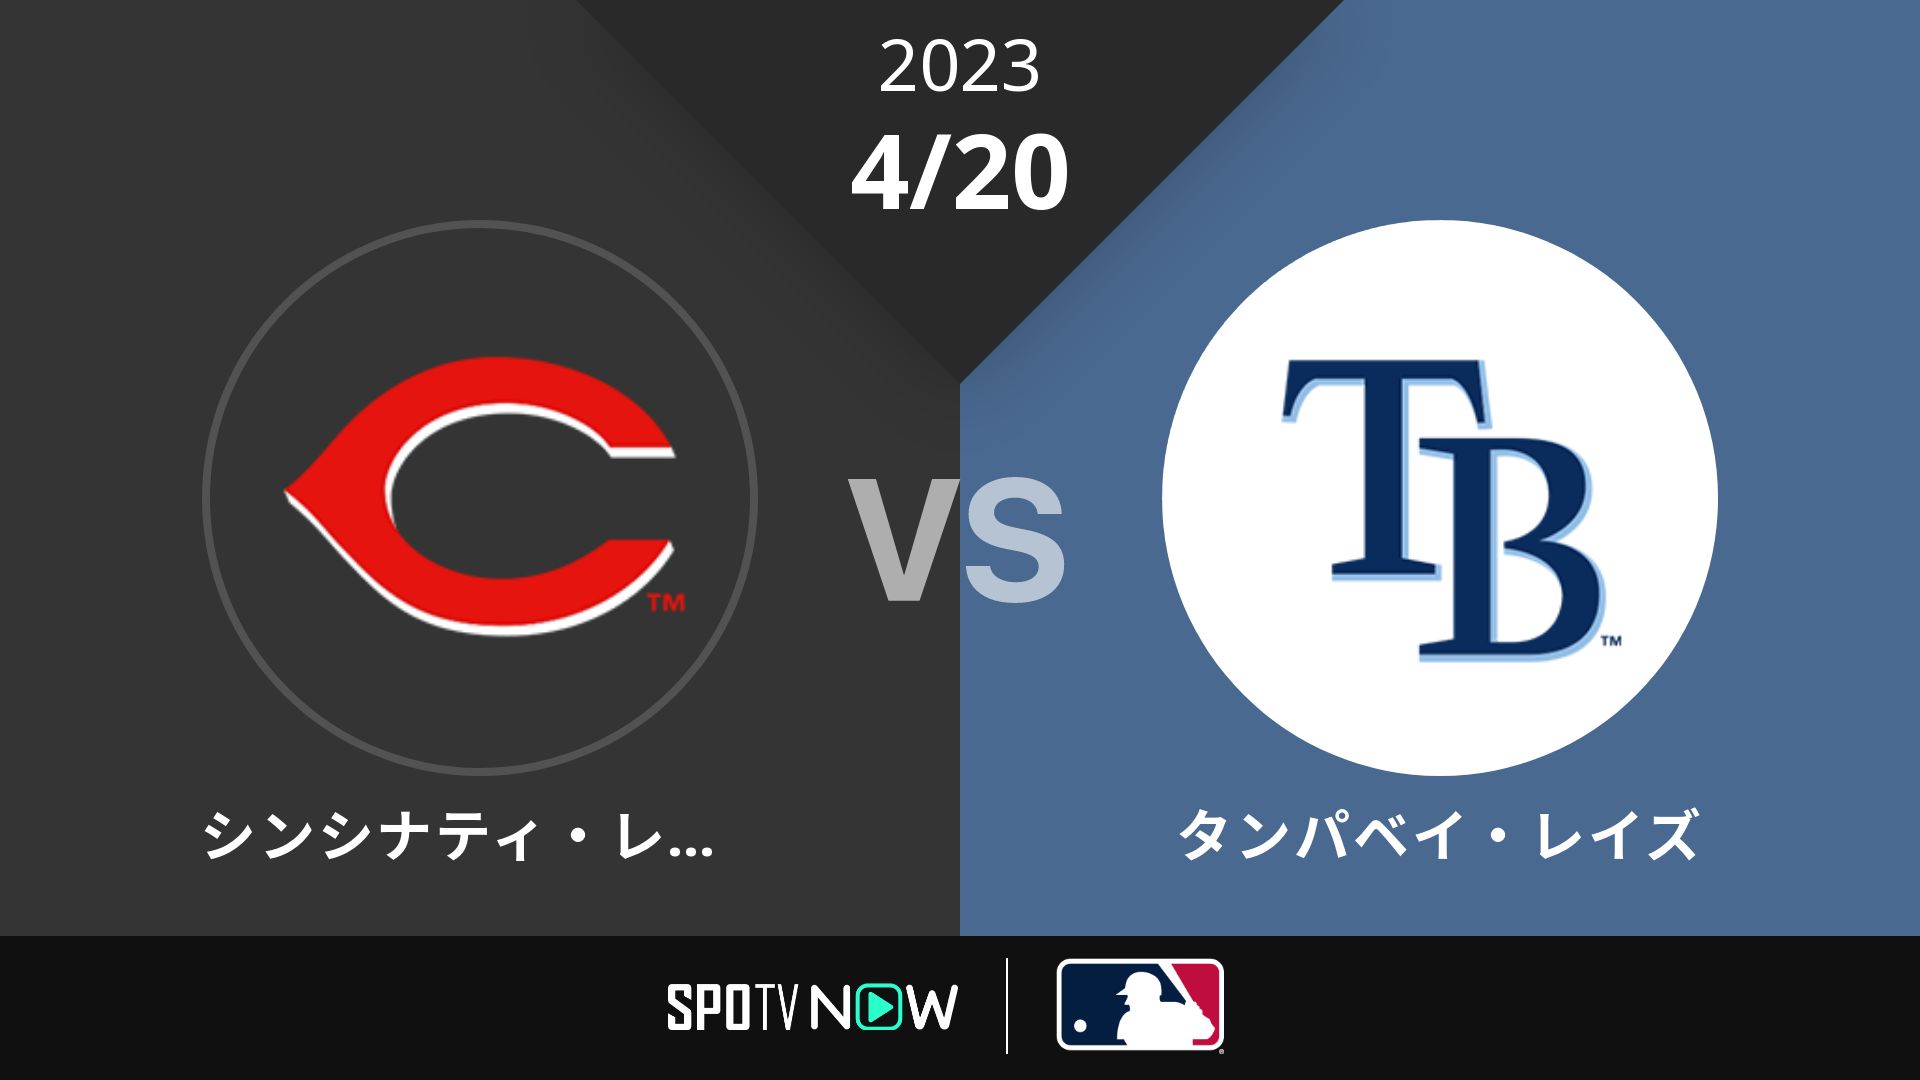 2023/4/20 レッズ vs レイズ [MLB]